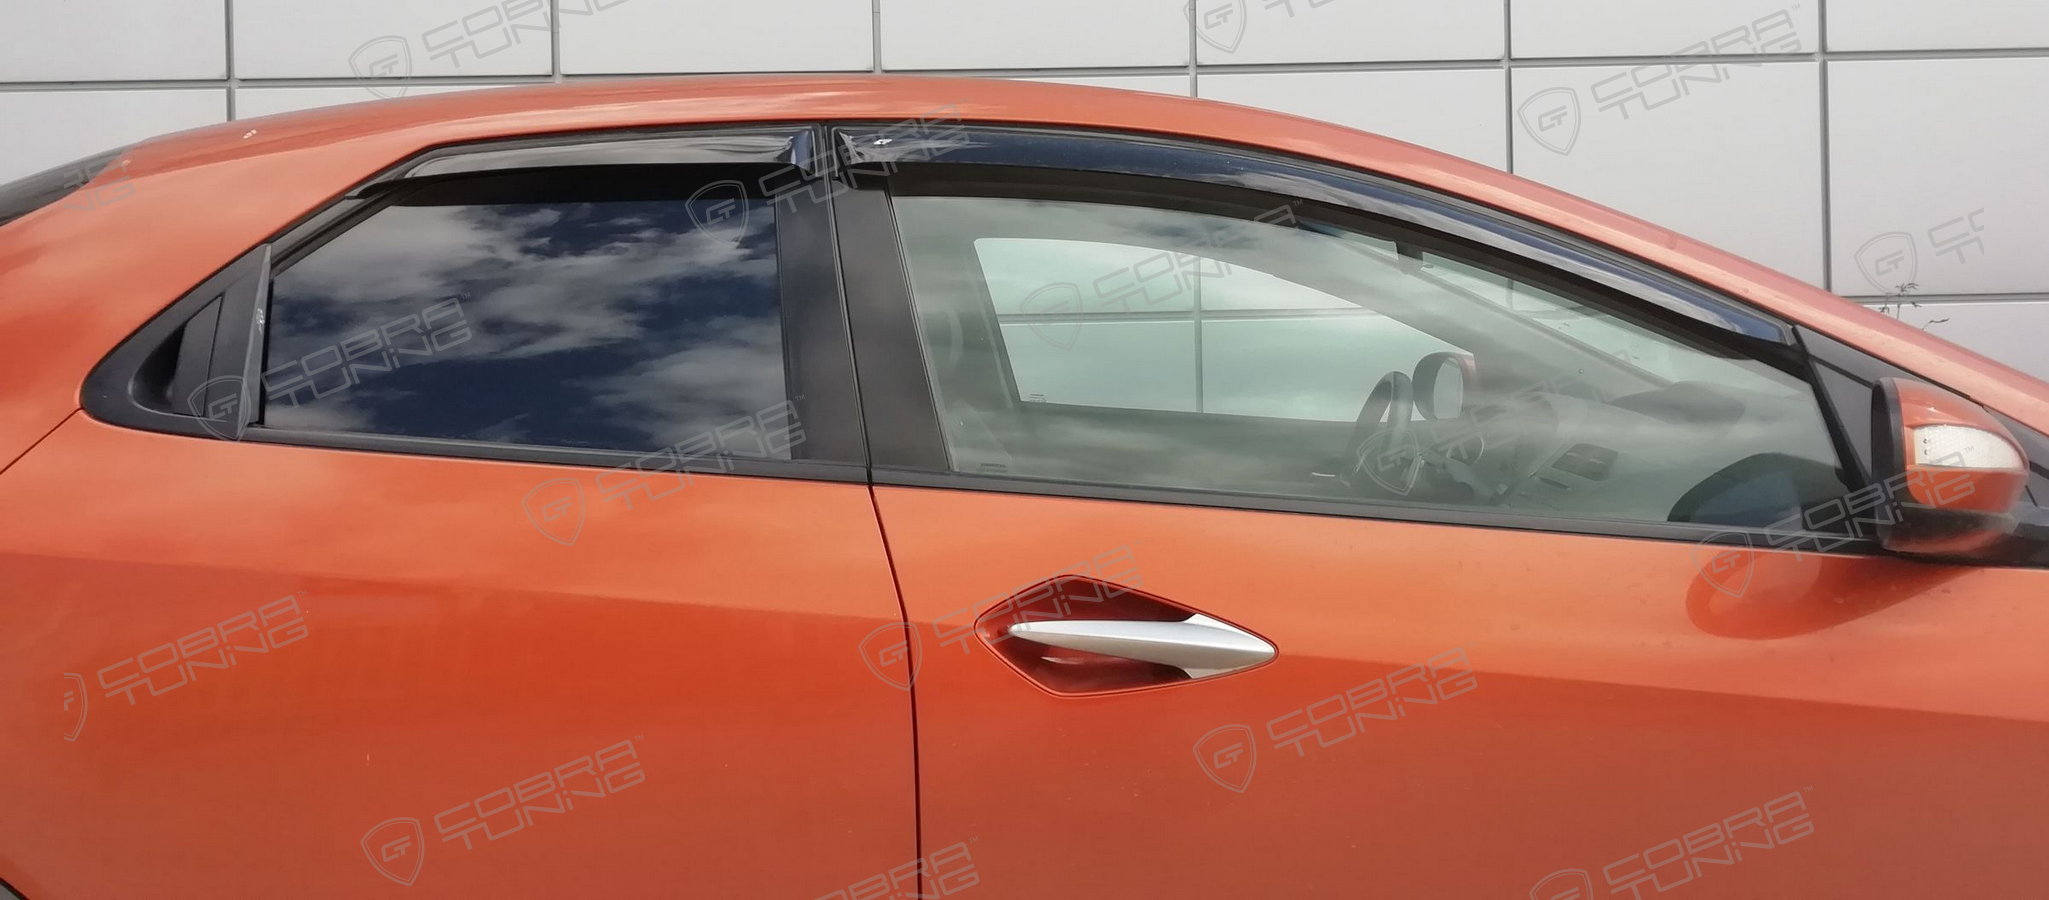 Отзыв - ветровики Кобра Тюнинг на окна Хонда Цивик 2006 хэтчбек